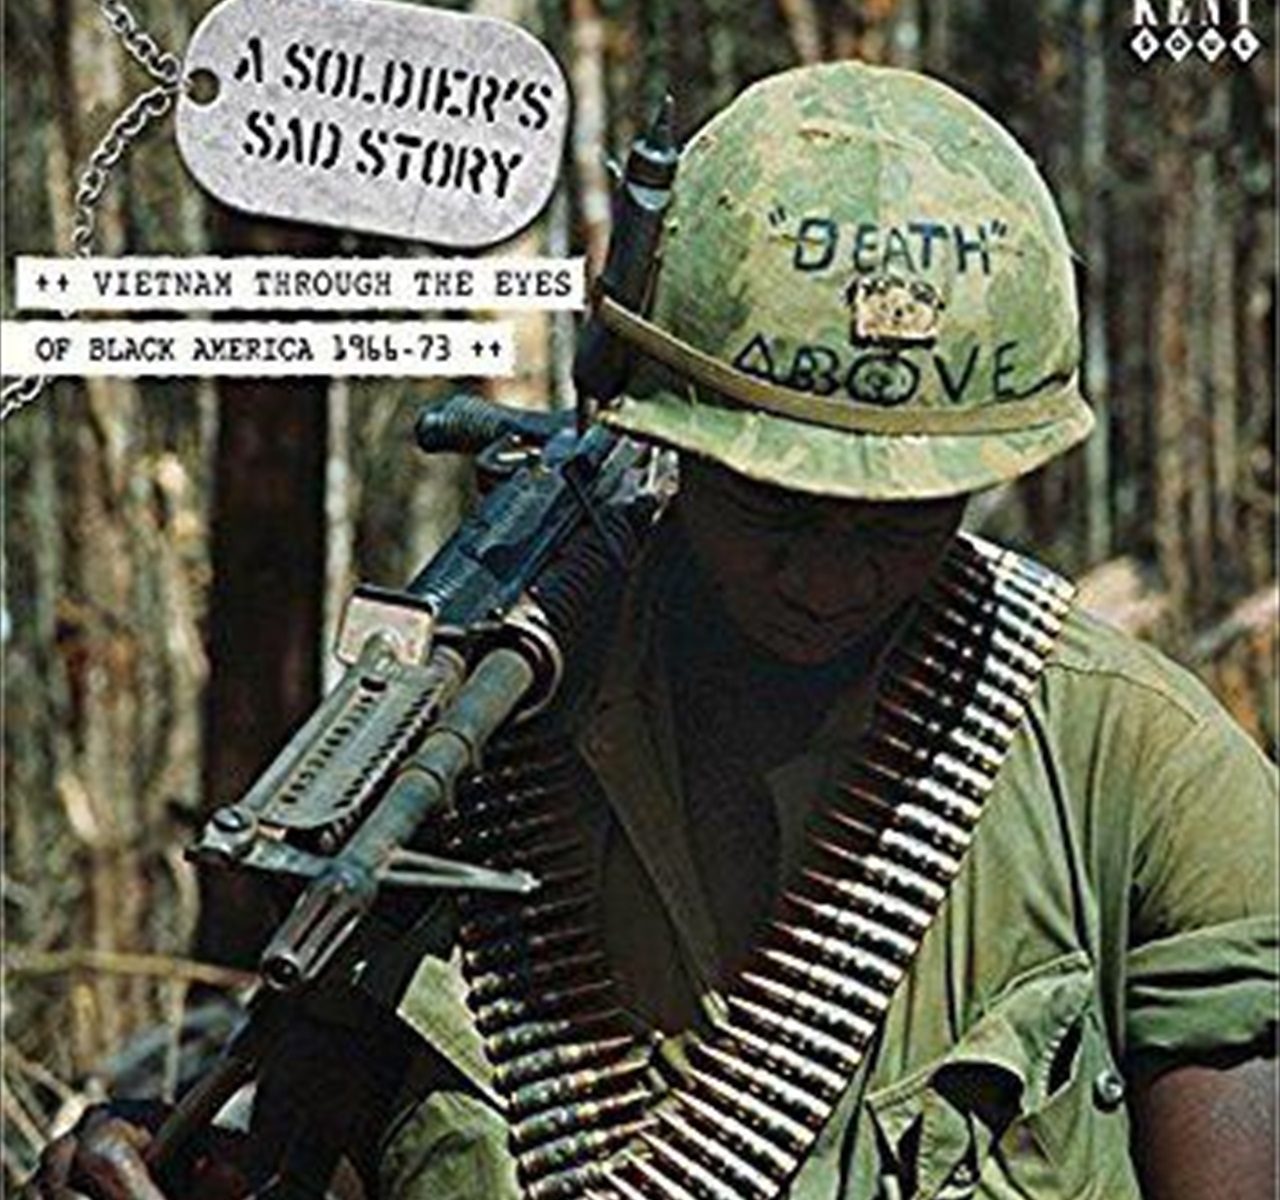 ベトナム戦争の時、最前線に送られた黒人兵の目から戦争の実相を見た、ヒット曲が集められた、"A Soldier’s Sad Story Vietnam through the Eyes of Black America !966-63"